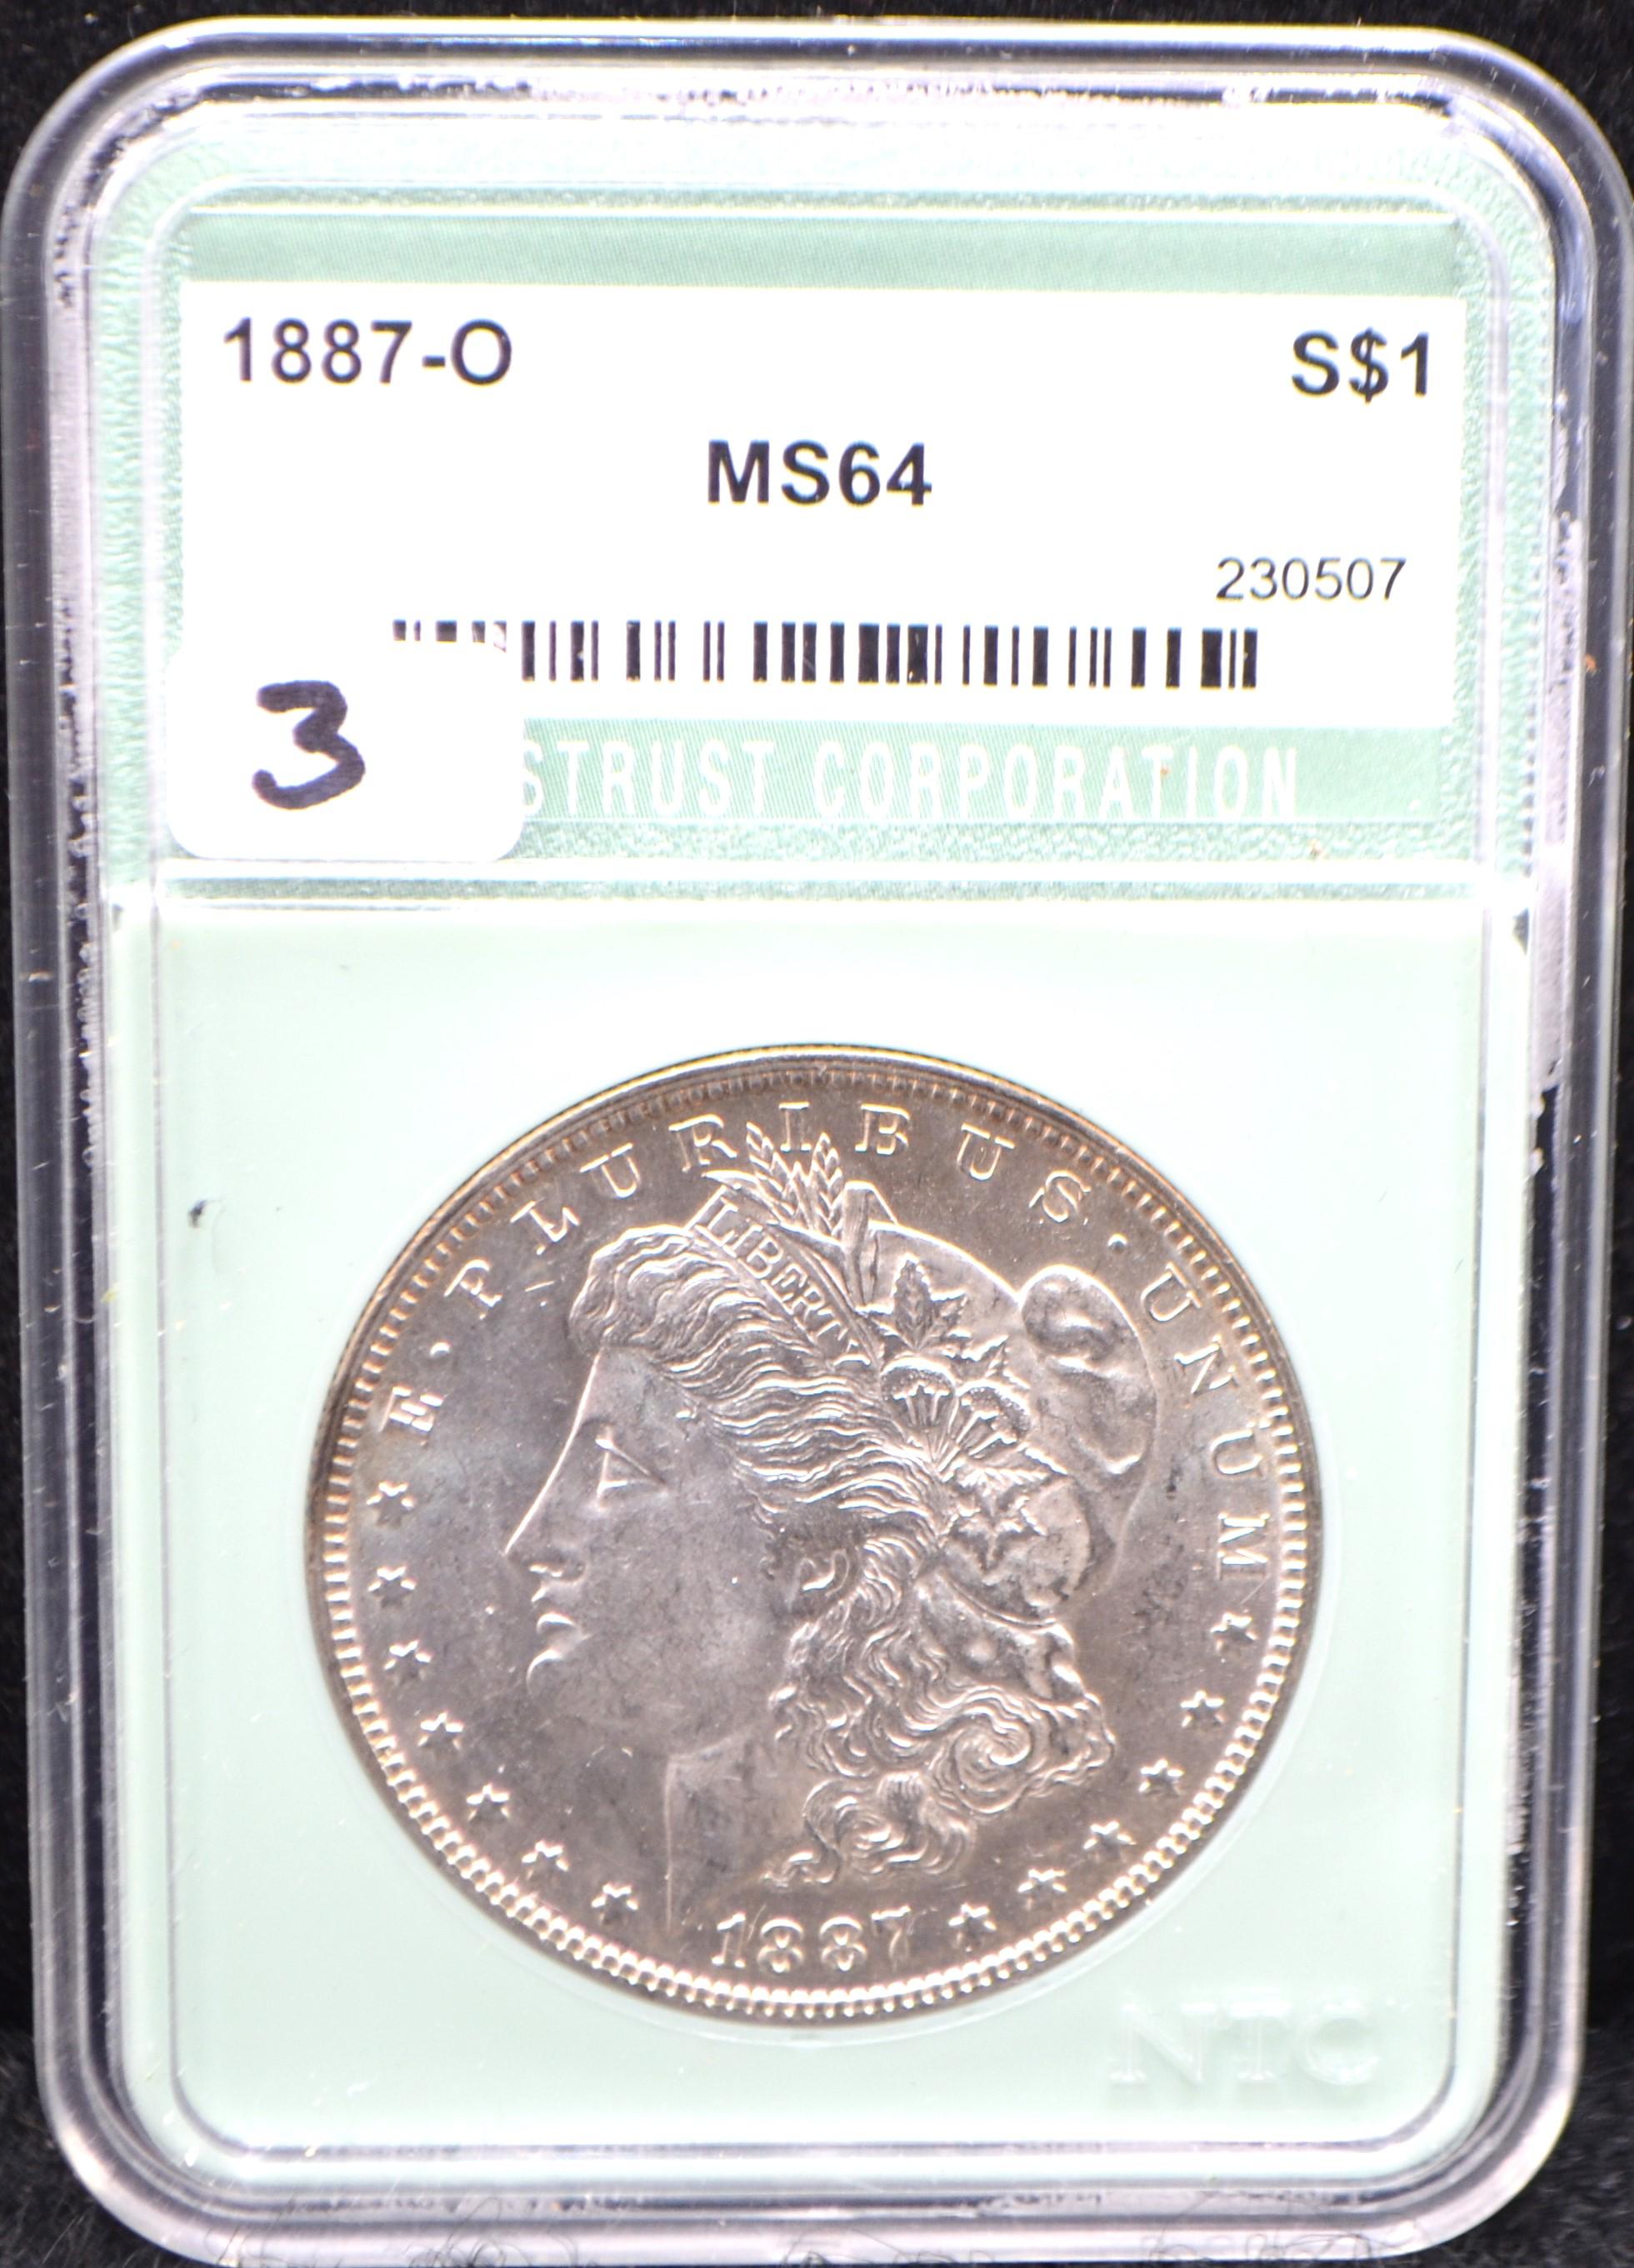 RARE 1897-0 MORGAN DOLLAR NTC MS64